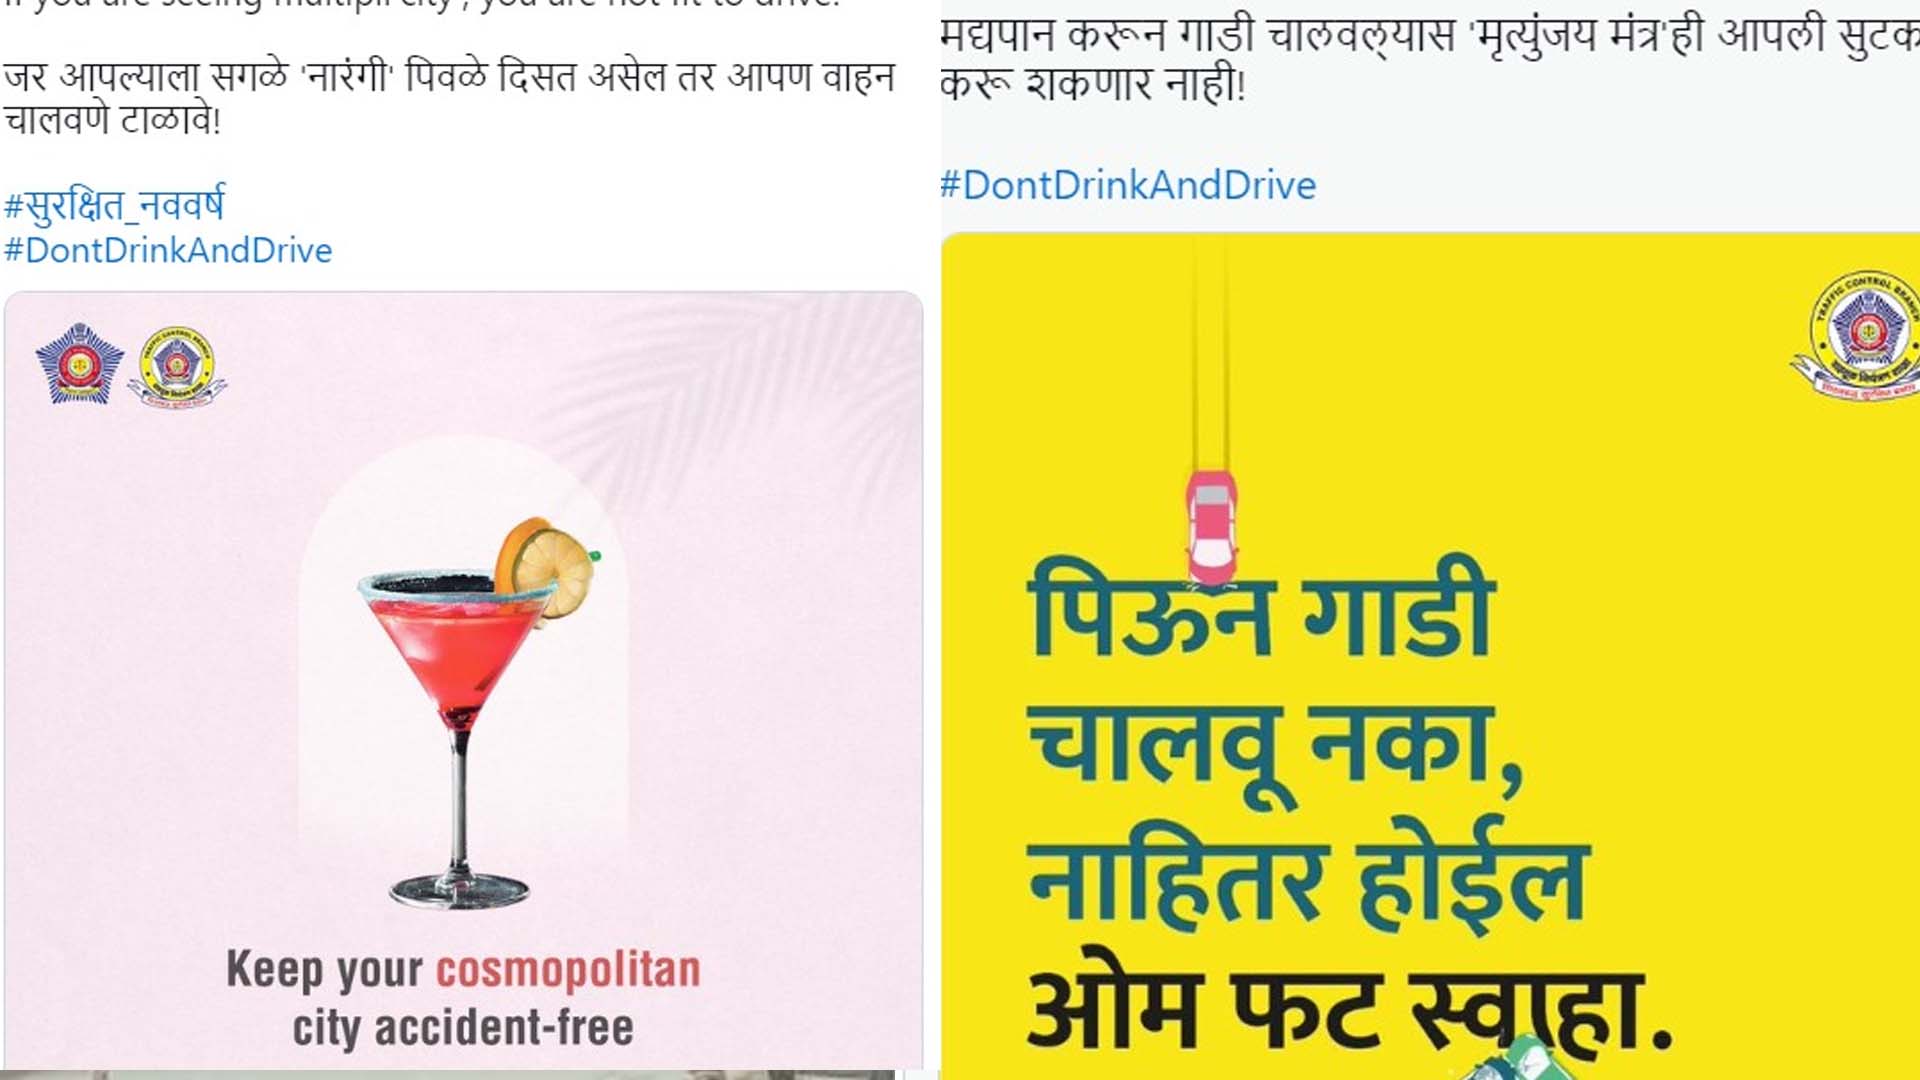 मुंबई पुलिस ने ड्रिंक एंड ड्राइव के चलते 156 लोगों पर की कार्रवाई